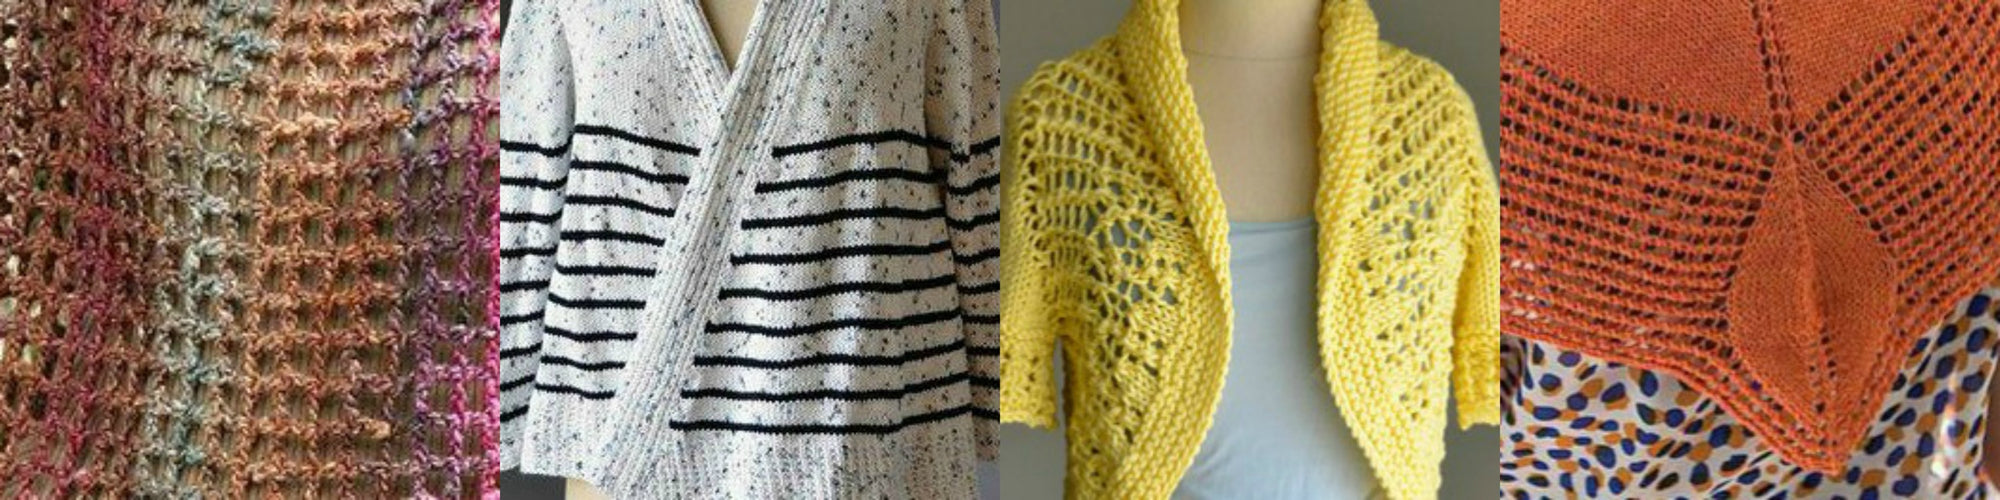 Top 10 Free Spring Knitting Patterns